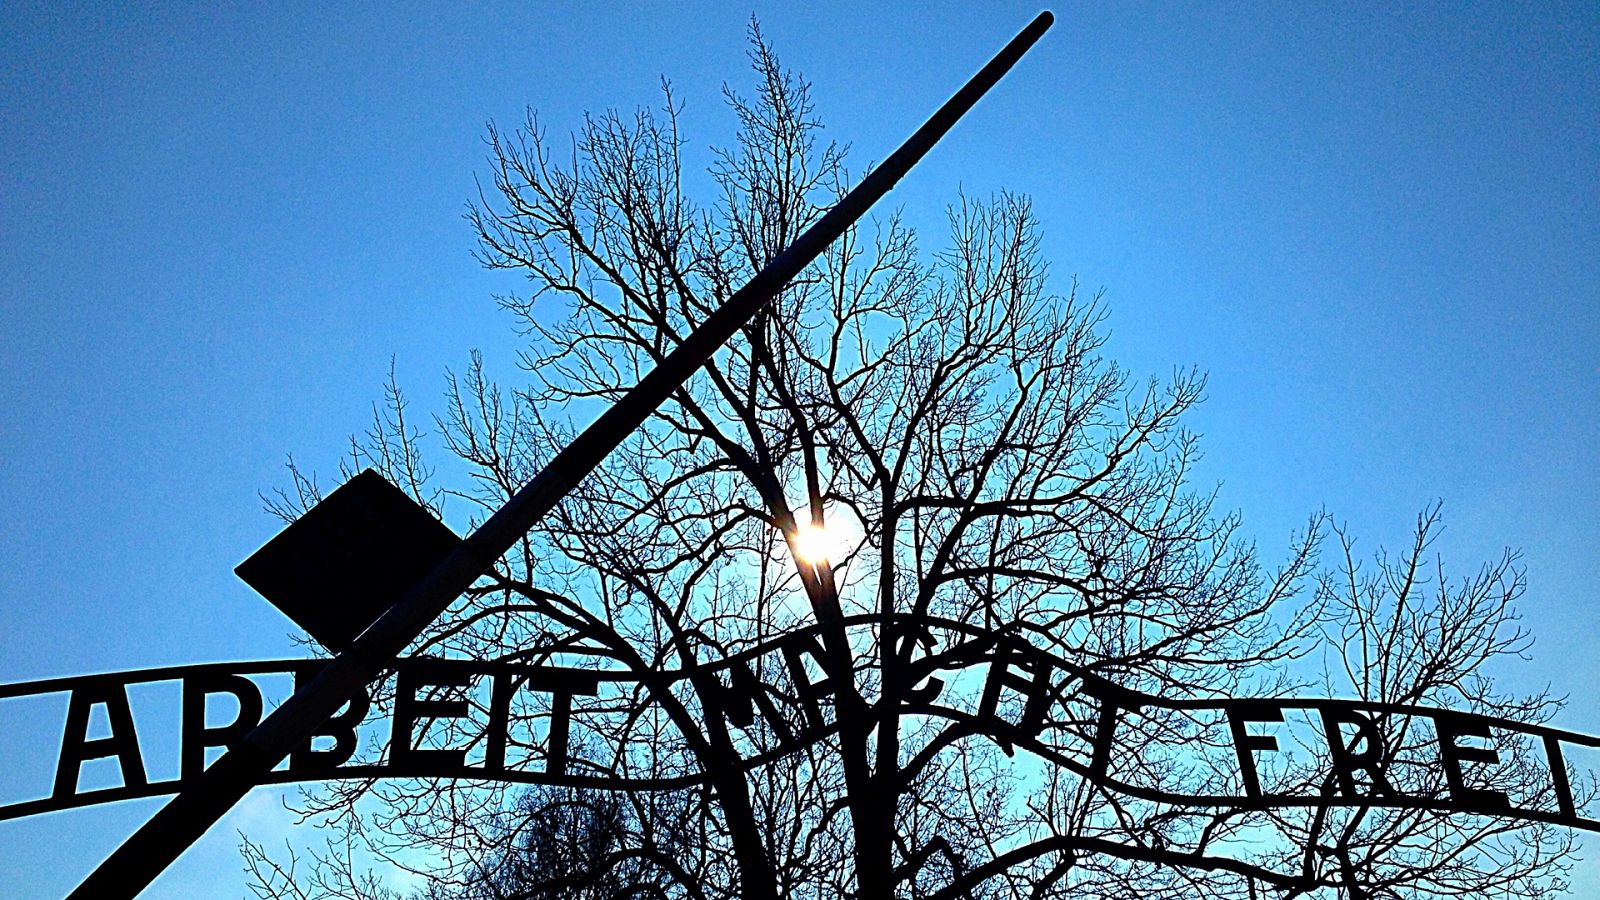 La noche temática - 1944: ¿Deberíamos bombardear Auschwitz? - Documental en RTVE